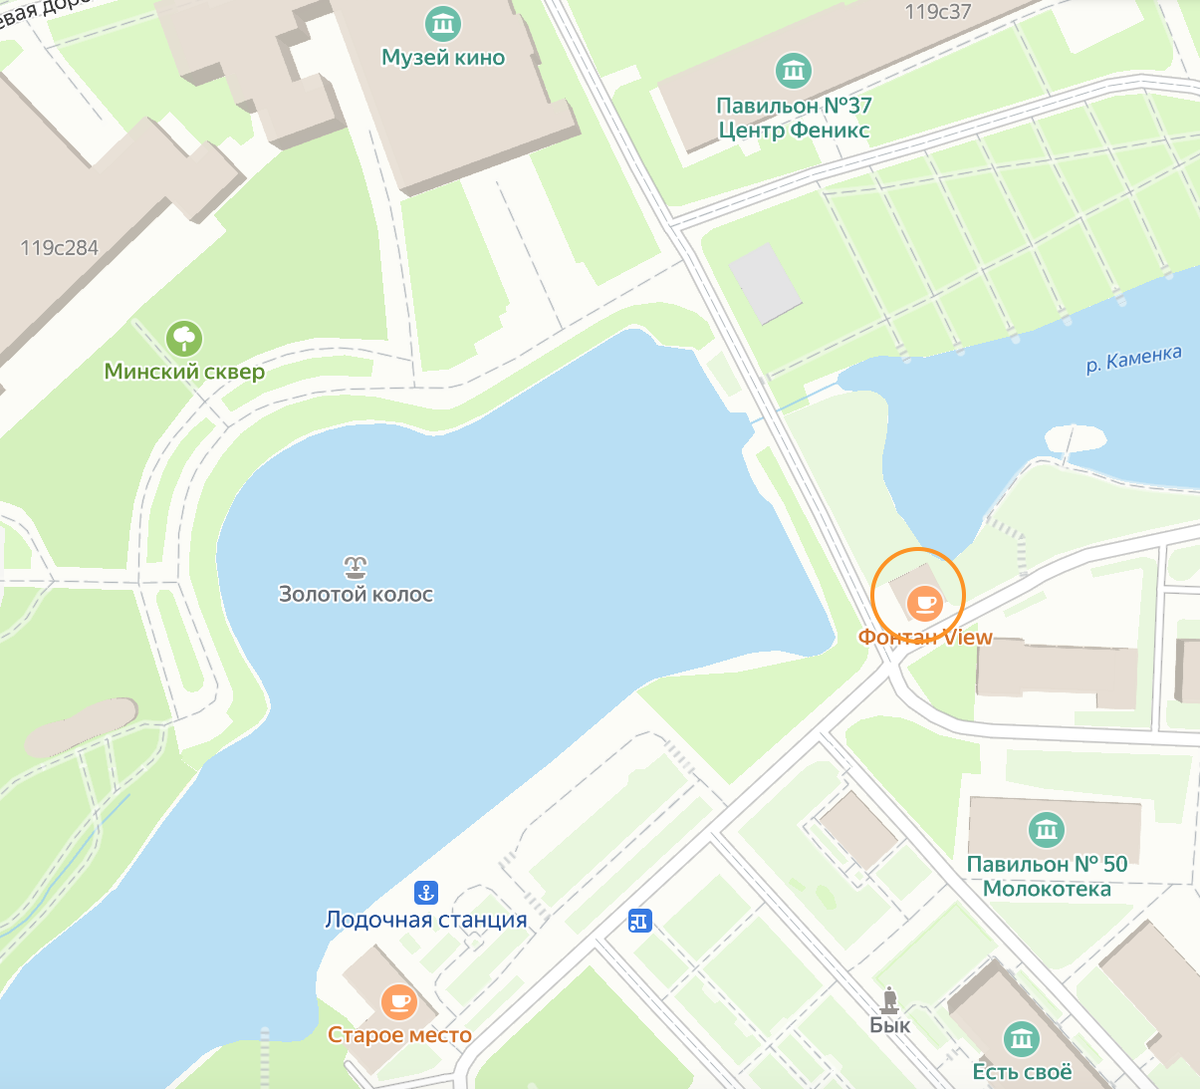 Расположение здания на карте современной Москвы в оранжевом кружочке. Яндекс.Карты.